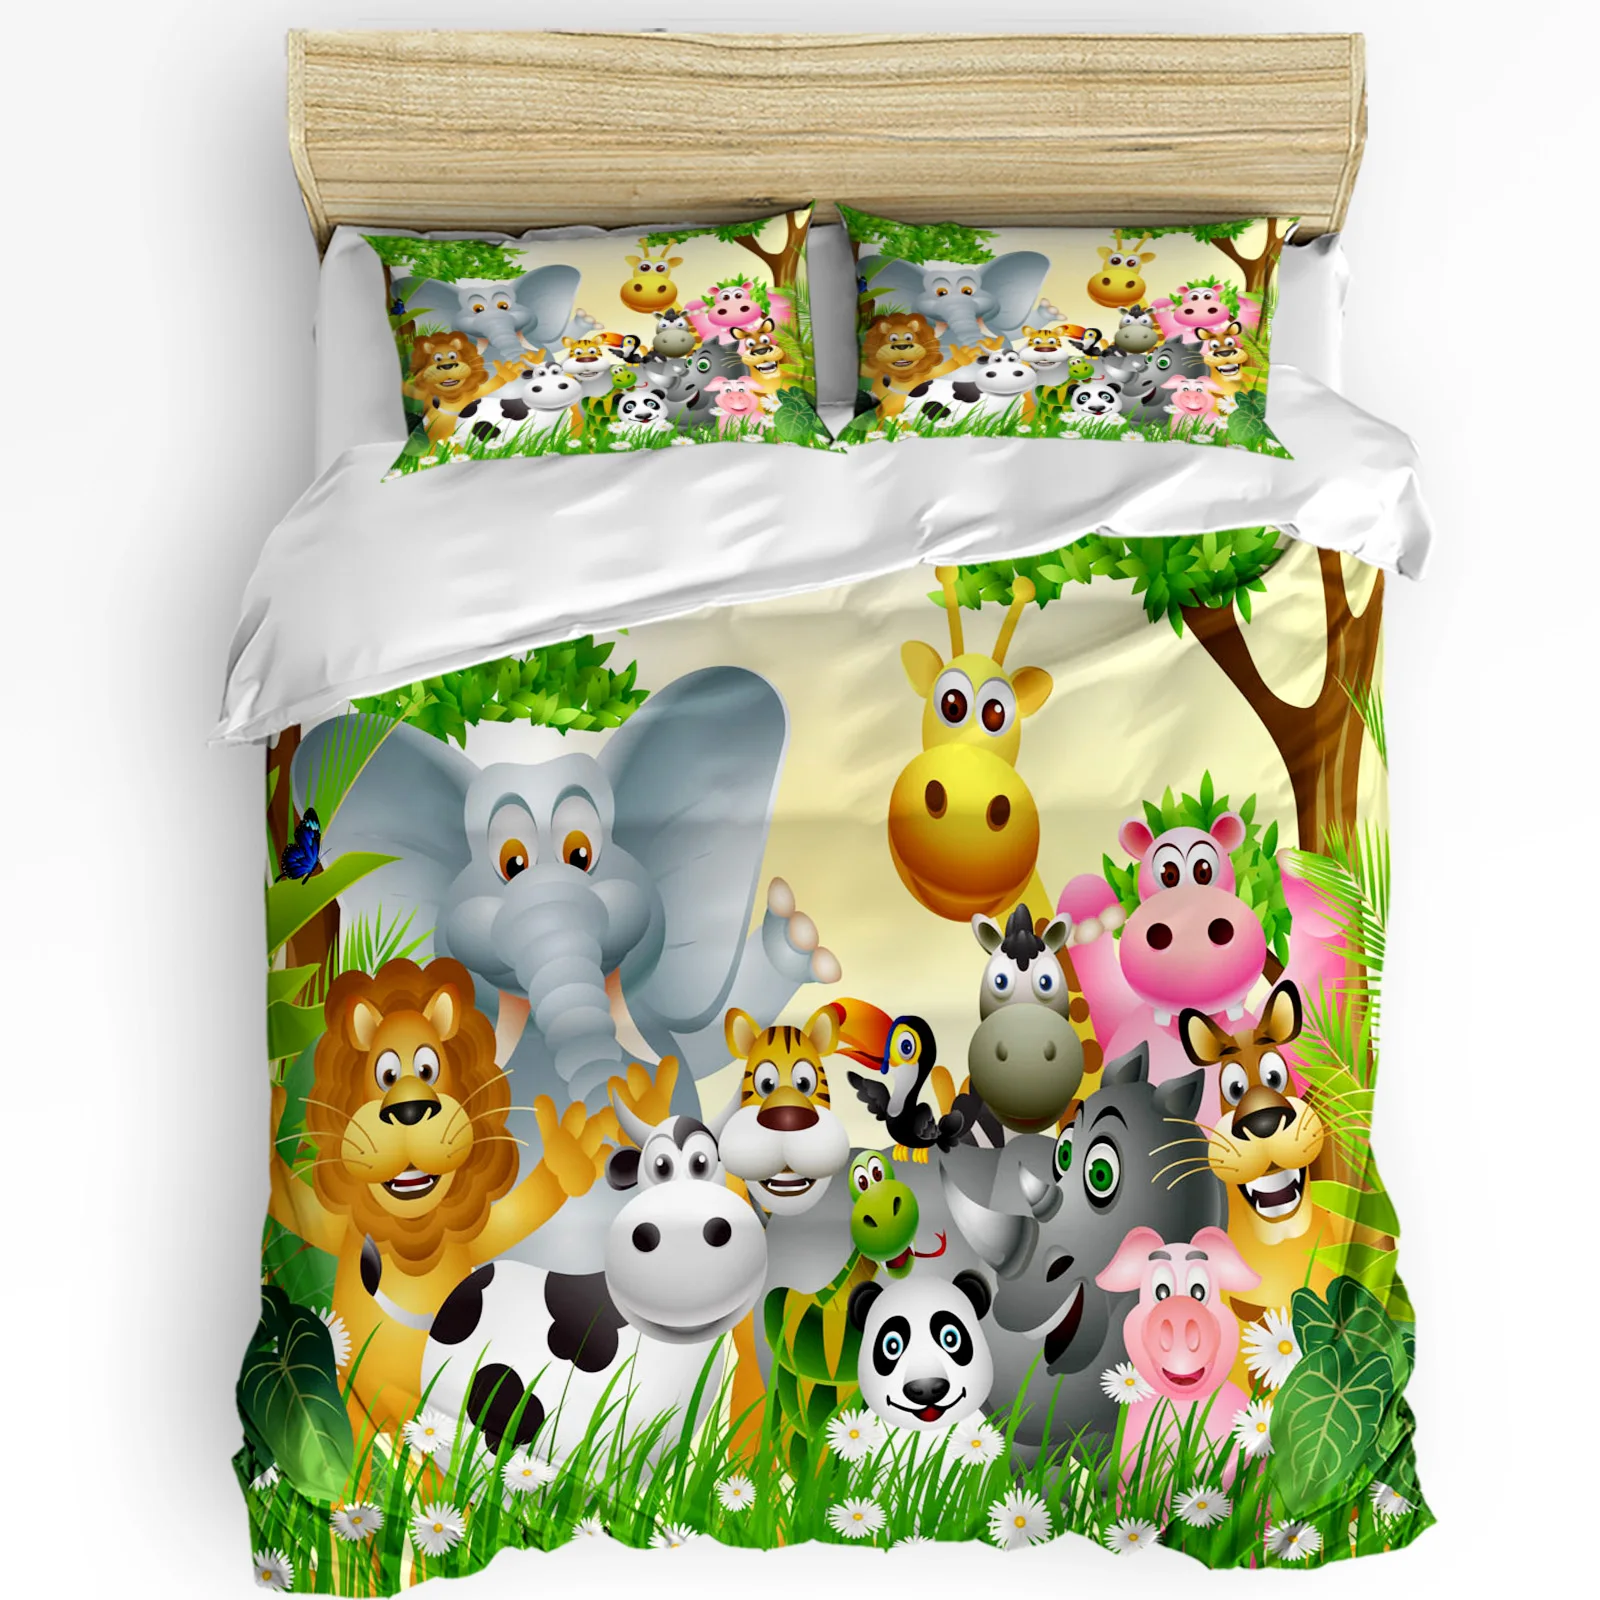 

Комплект постельного белья из 3 предметов с изображением Льва слона тигра жирафа мультяшных животных для двуспальной кровати домашний текс...